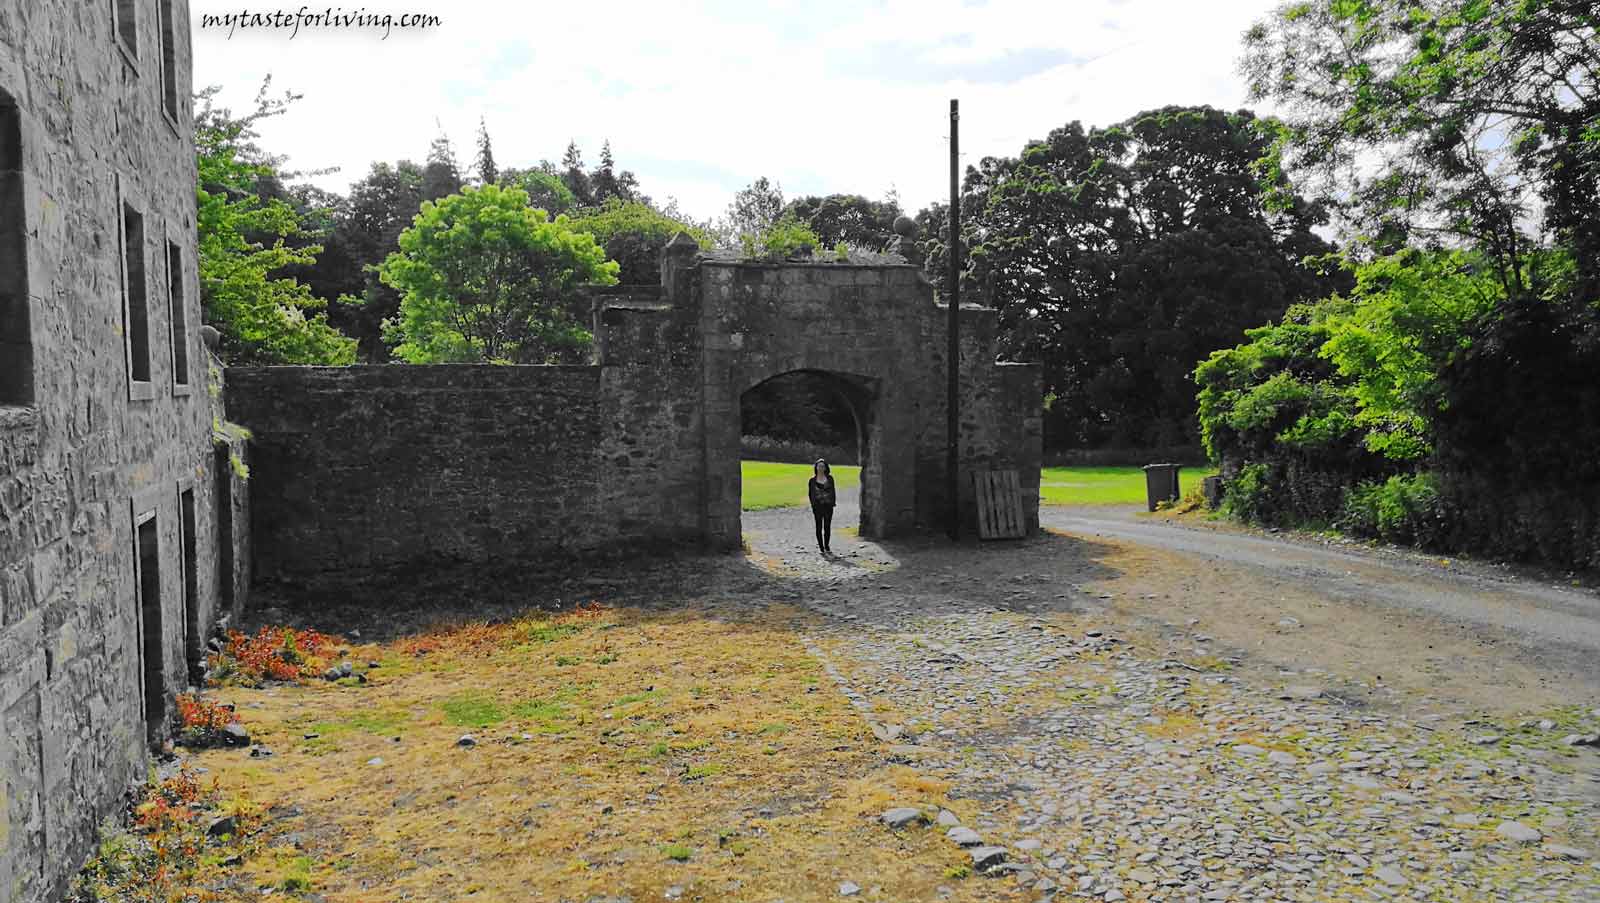 Сбъдната мечта беше посещението на замъка Мидхоуп или известен още като Лалиброх. Мястото е популярно от сериала „Друговремец“ (Outlander).